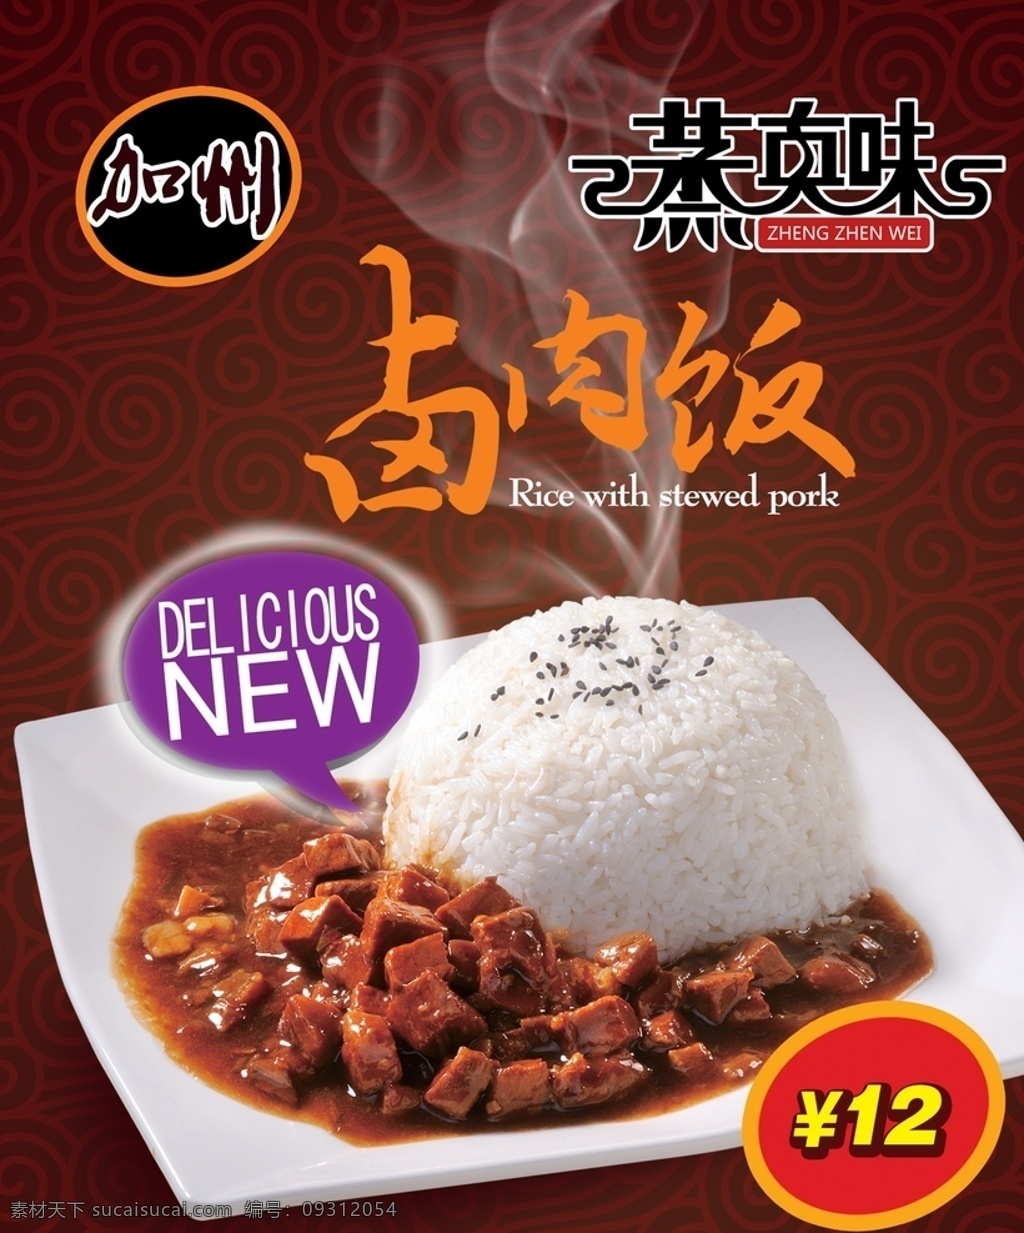 卤肉 饭 海报 广告 菜单 食物 卤肉饭 餐饮 美食 台湾料理 灯箱广告 传单 餐饮美食 背景